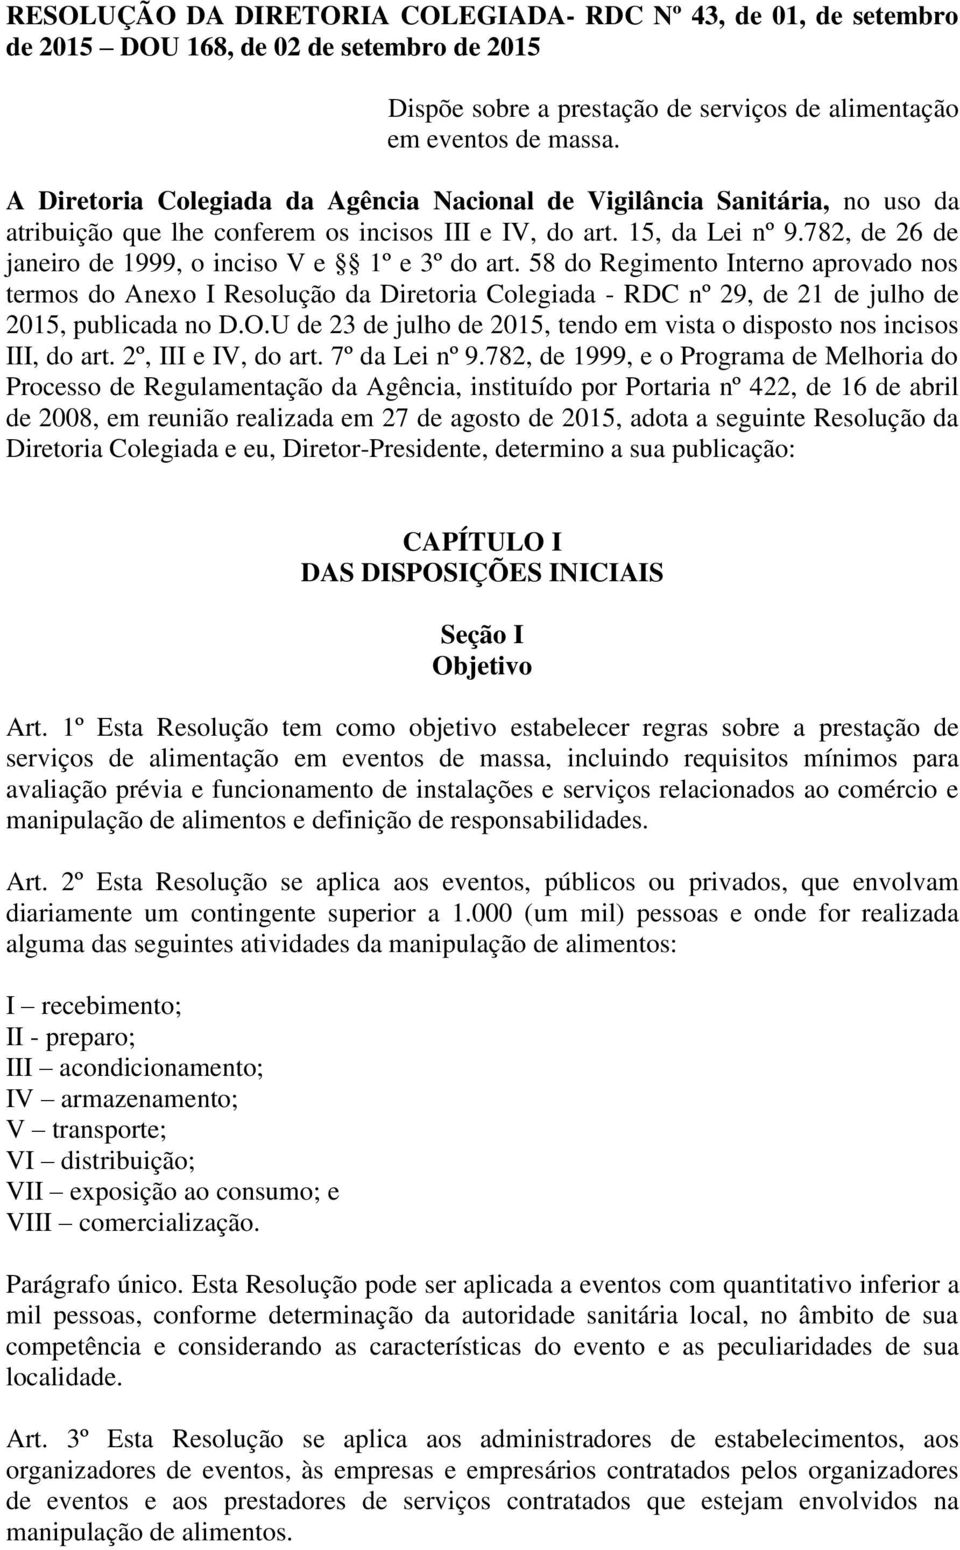 782, de 26 de janeiro de 1999, o inciso V e 1º e 3º do art. 58 do Regimento Interno aprovado nos termos do Anexo I Resolução da Diretoria Colegiada - RDC nº 29, de 21 de julho de 2015, publicada no D.